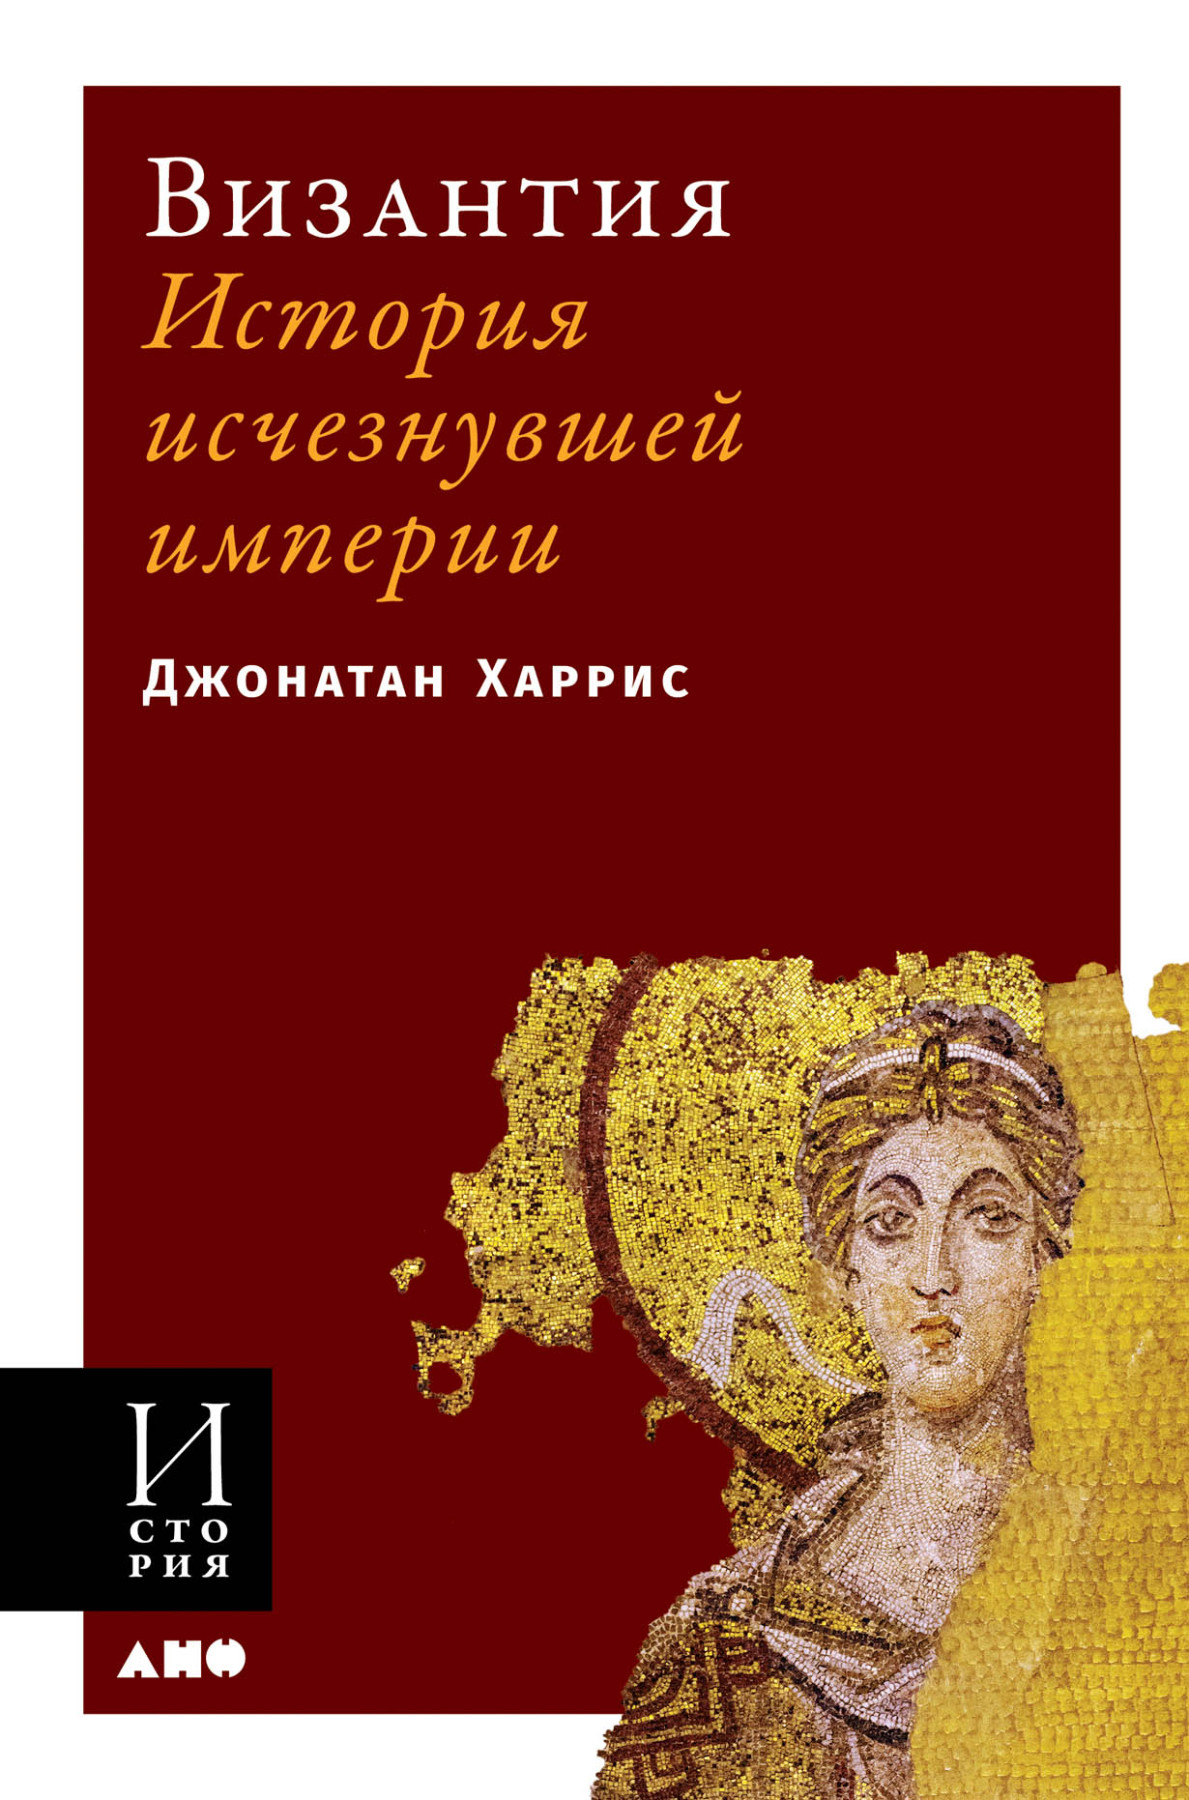 Византия обложка.